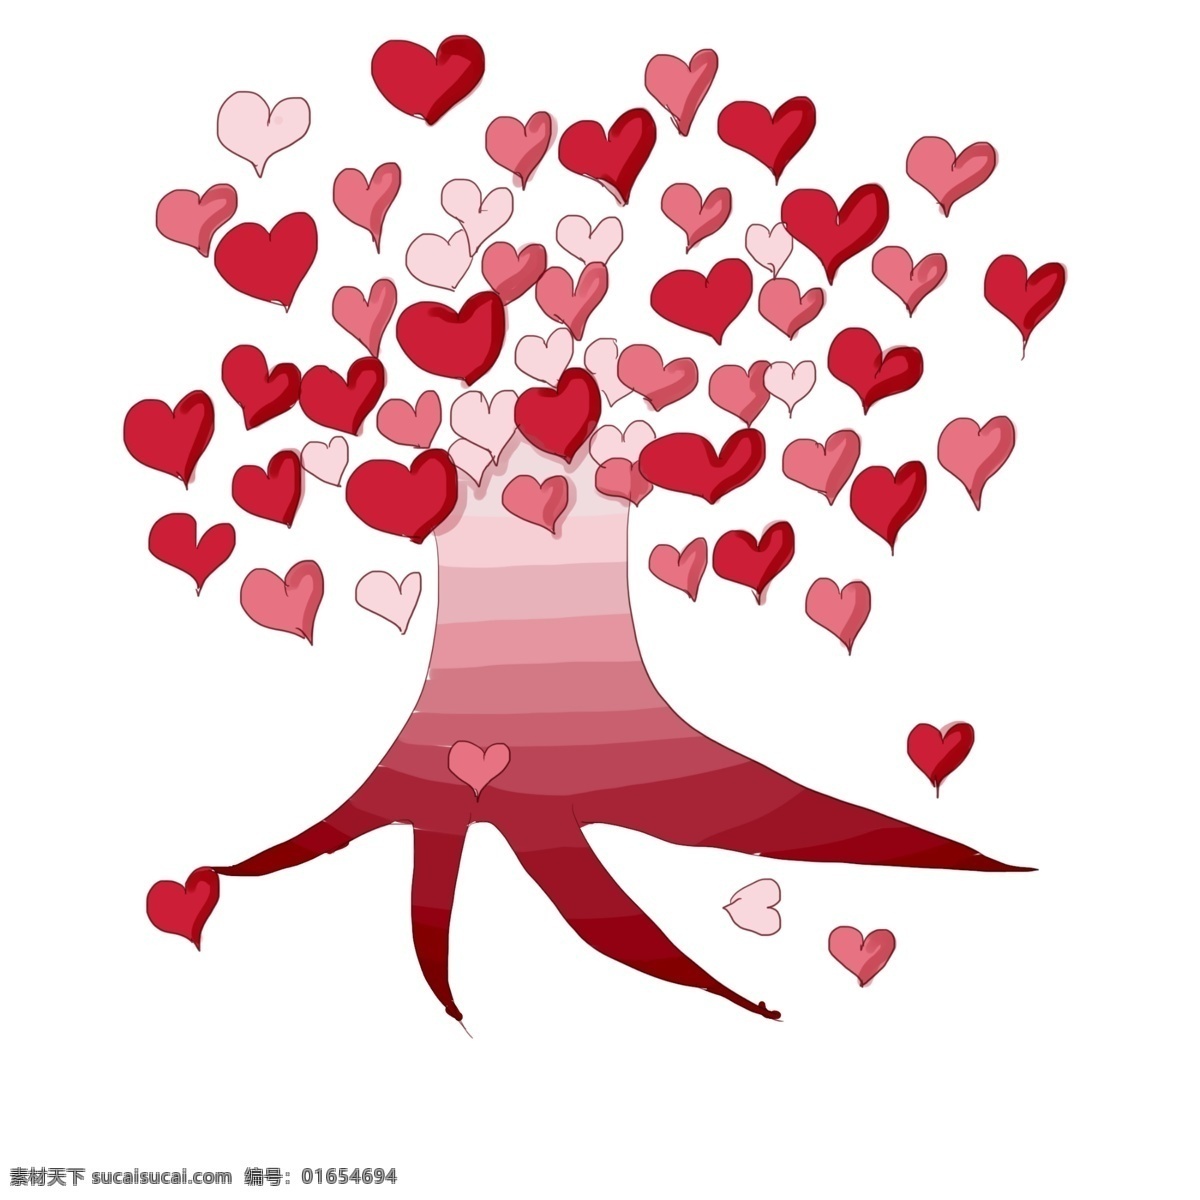 手绘 卡通 爱 心树 插画 手绘爱心树 树木 红色爱心树 红色爱心 粉色爱心 树上的爱心 飘落的爱心